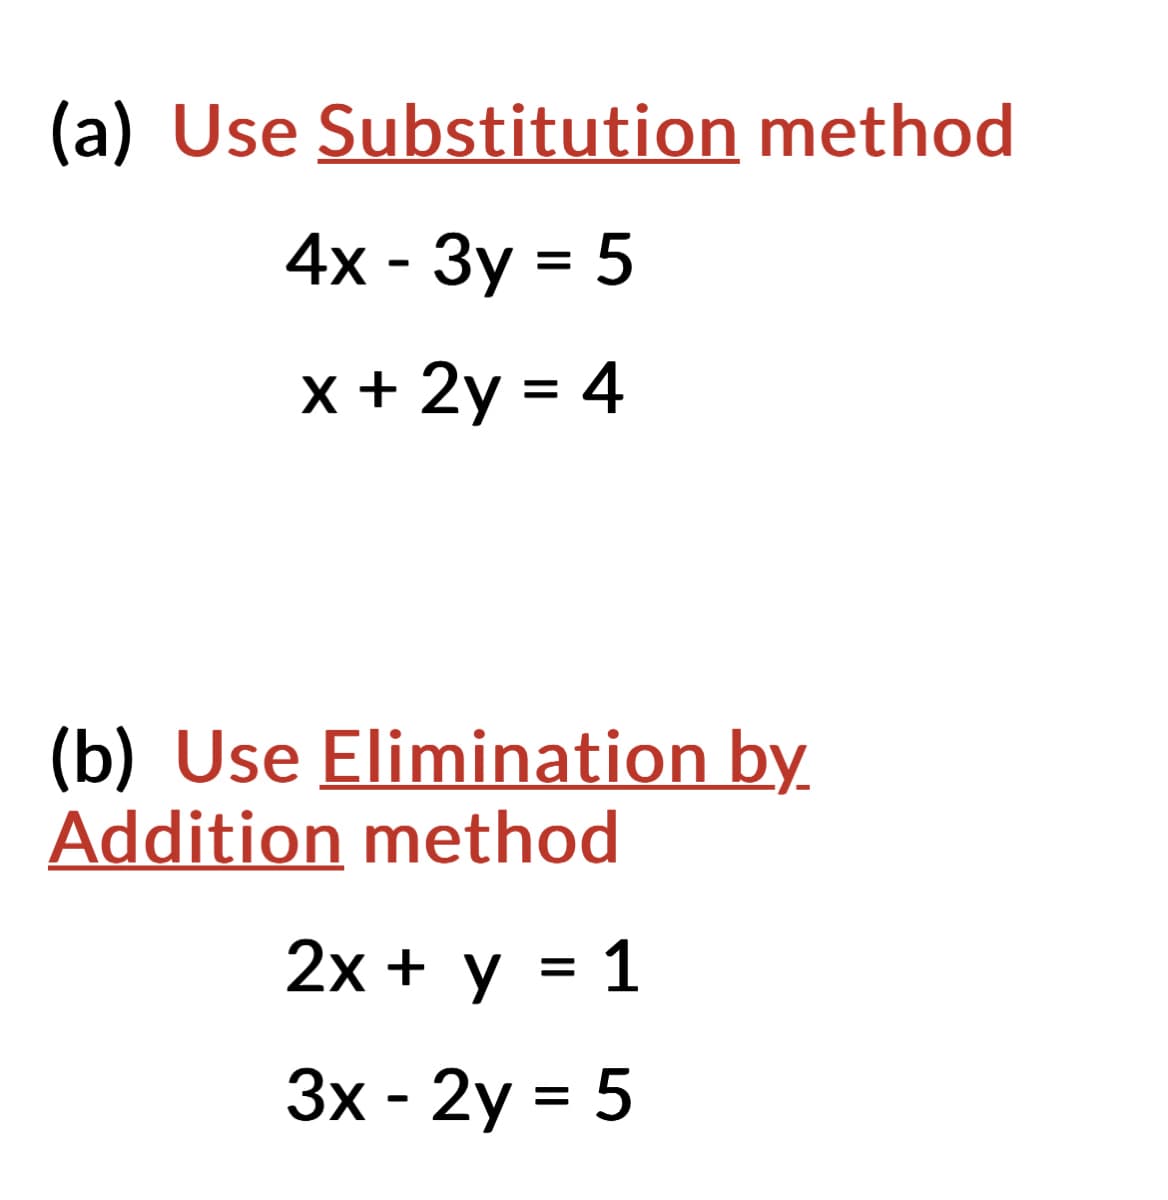 (a) Use Substitution method
4x - 3y = 5
x + 2y = 4
(b) Use Elimination by.
Addition method
2x + y = 1
3x - 2y = 5